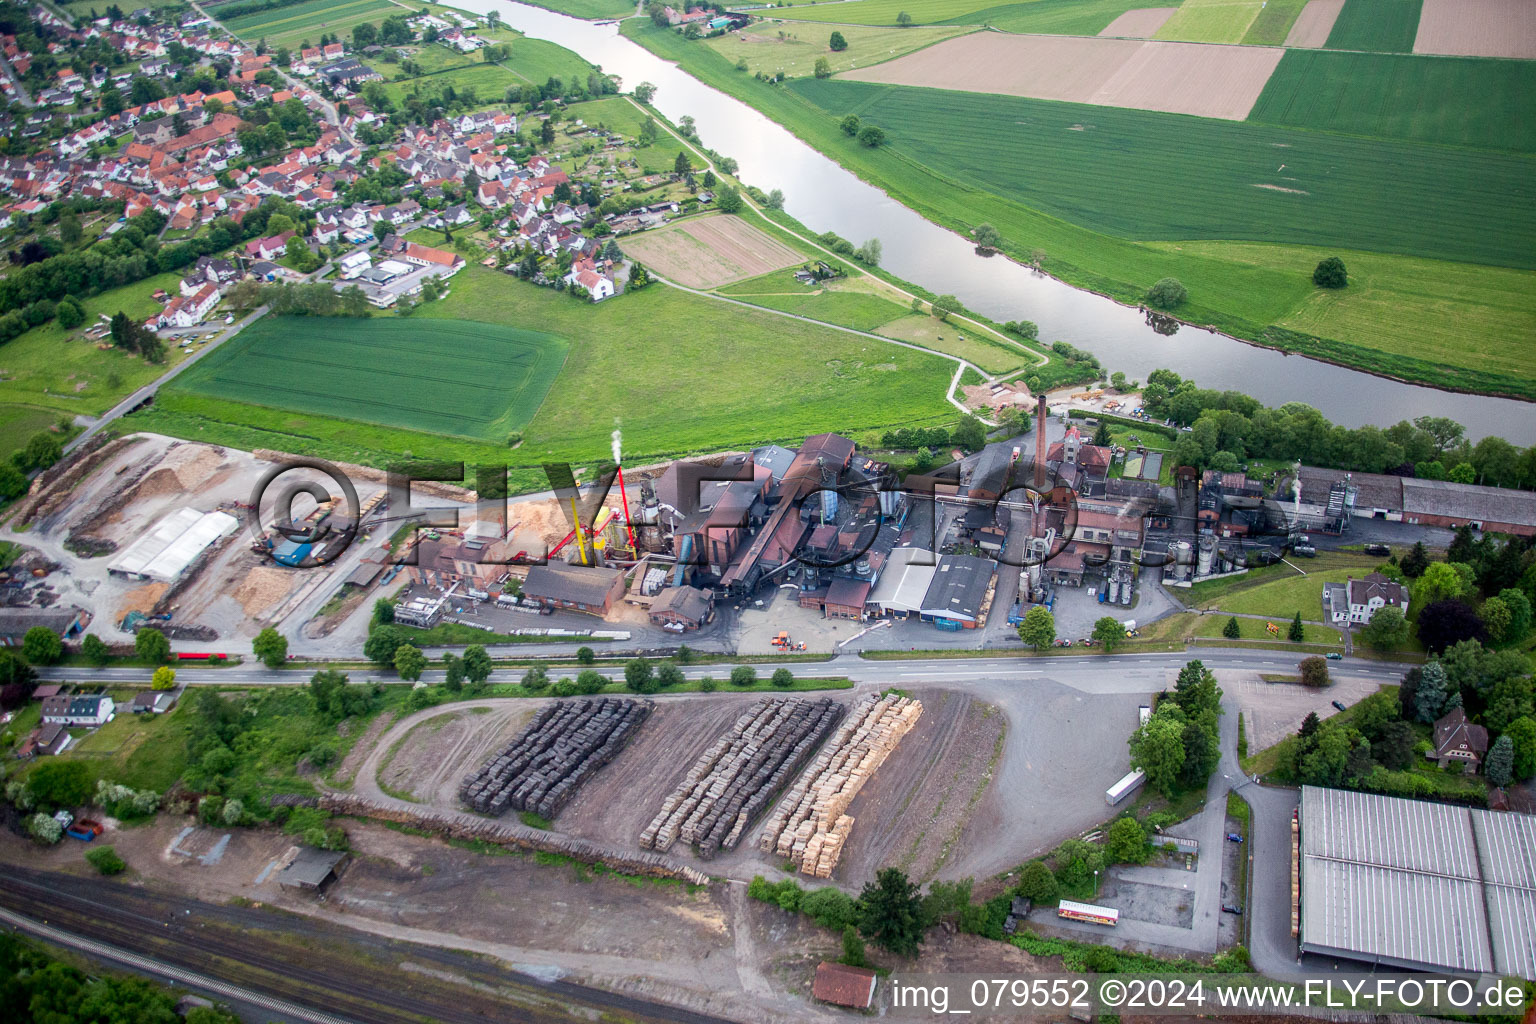 Vue aérienne de Systèmes techniques ProFagus GmbH pour la production de charbon de bois pour barbecue Buchen dans le district de Lippoldsberg à Bodenfelde dans le département Basse-Saxe, Allemagne